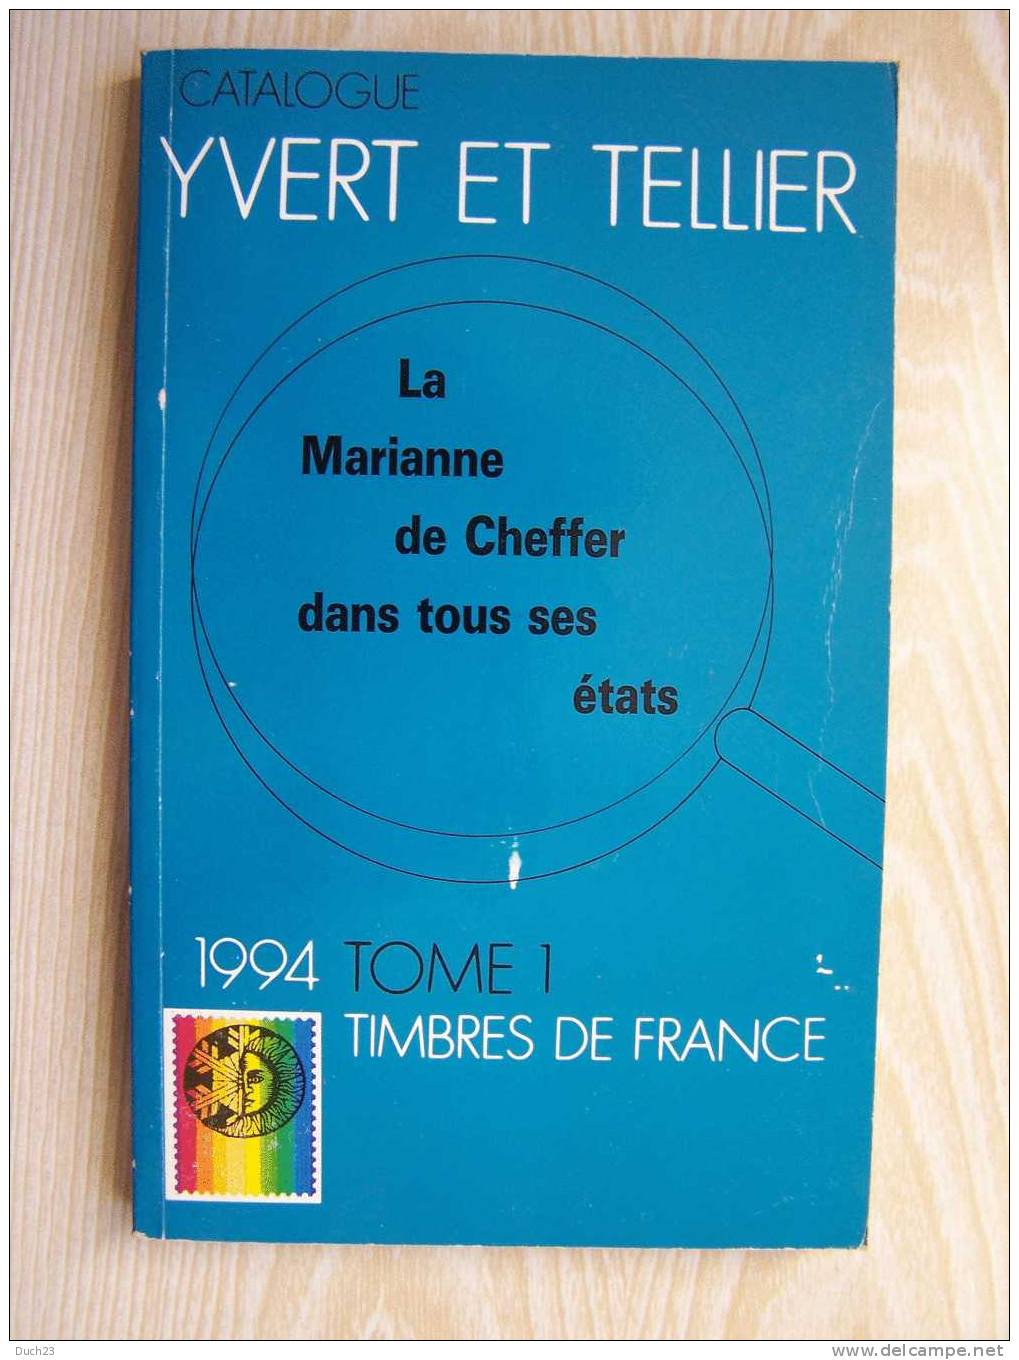 CATALOGUE DE COTATION YVERT ET TELLIER ANNEE 1994 TOME 1   TRES BON ETAT   REF CD - Frankreich